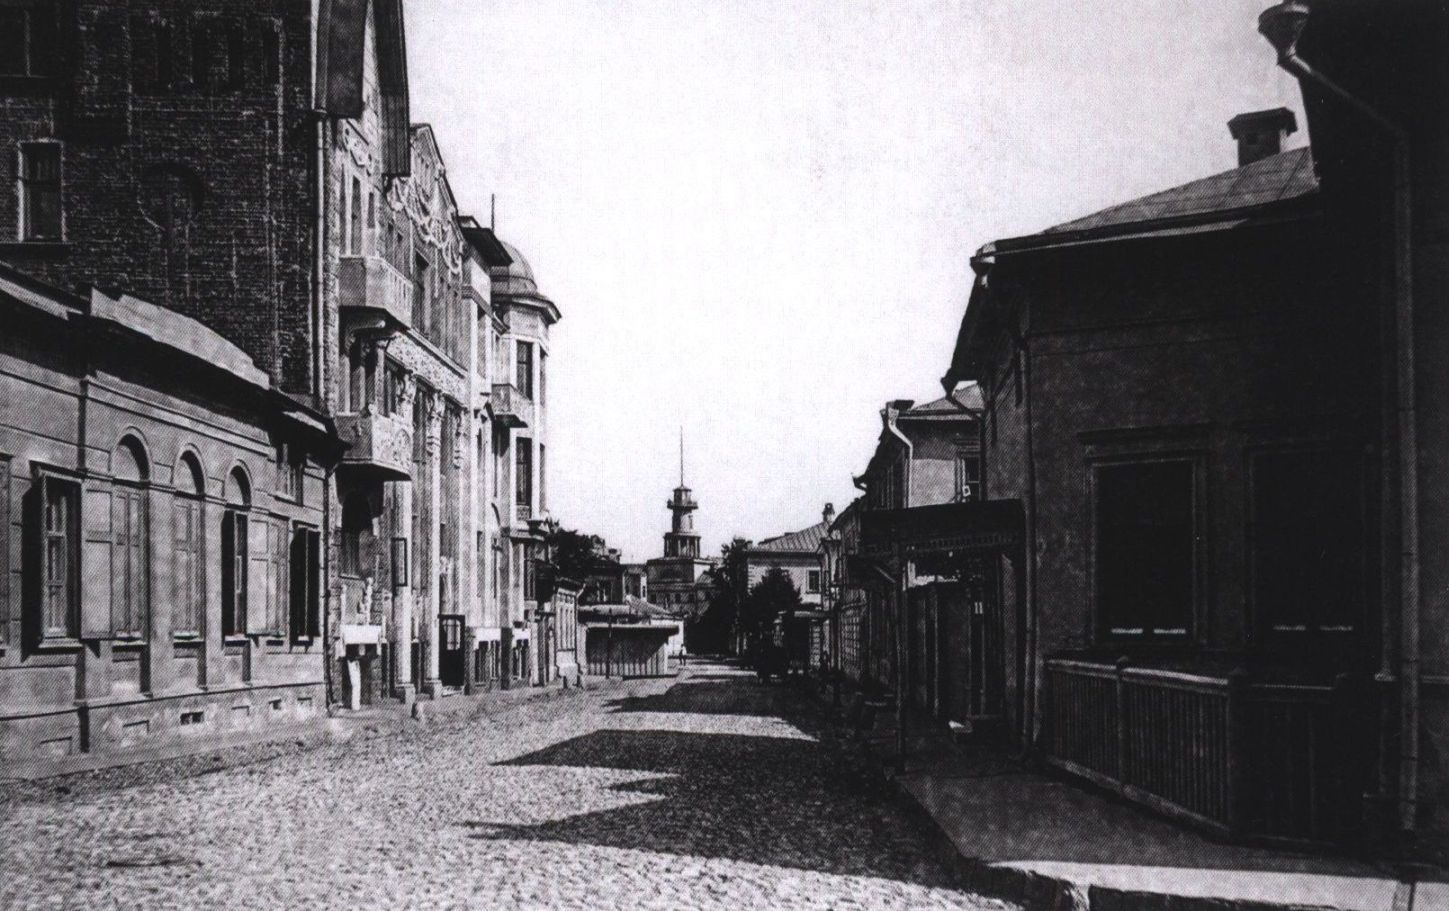 Обухов переулок. 1913 г. Дом № 9 — по правой стороне переулка. После 1922 года переулок носит название Чистый